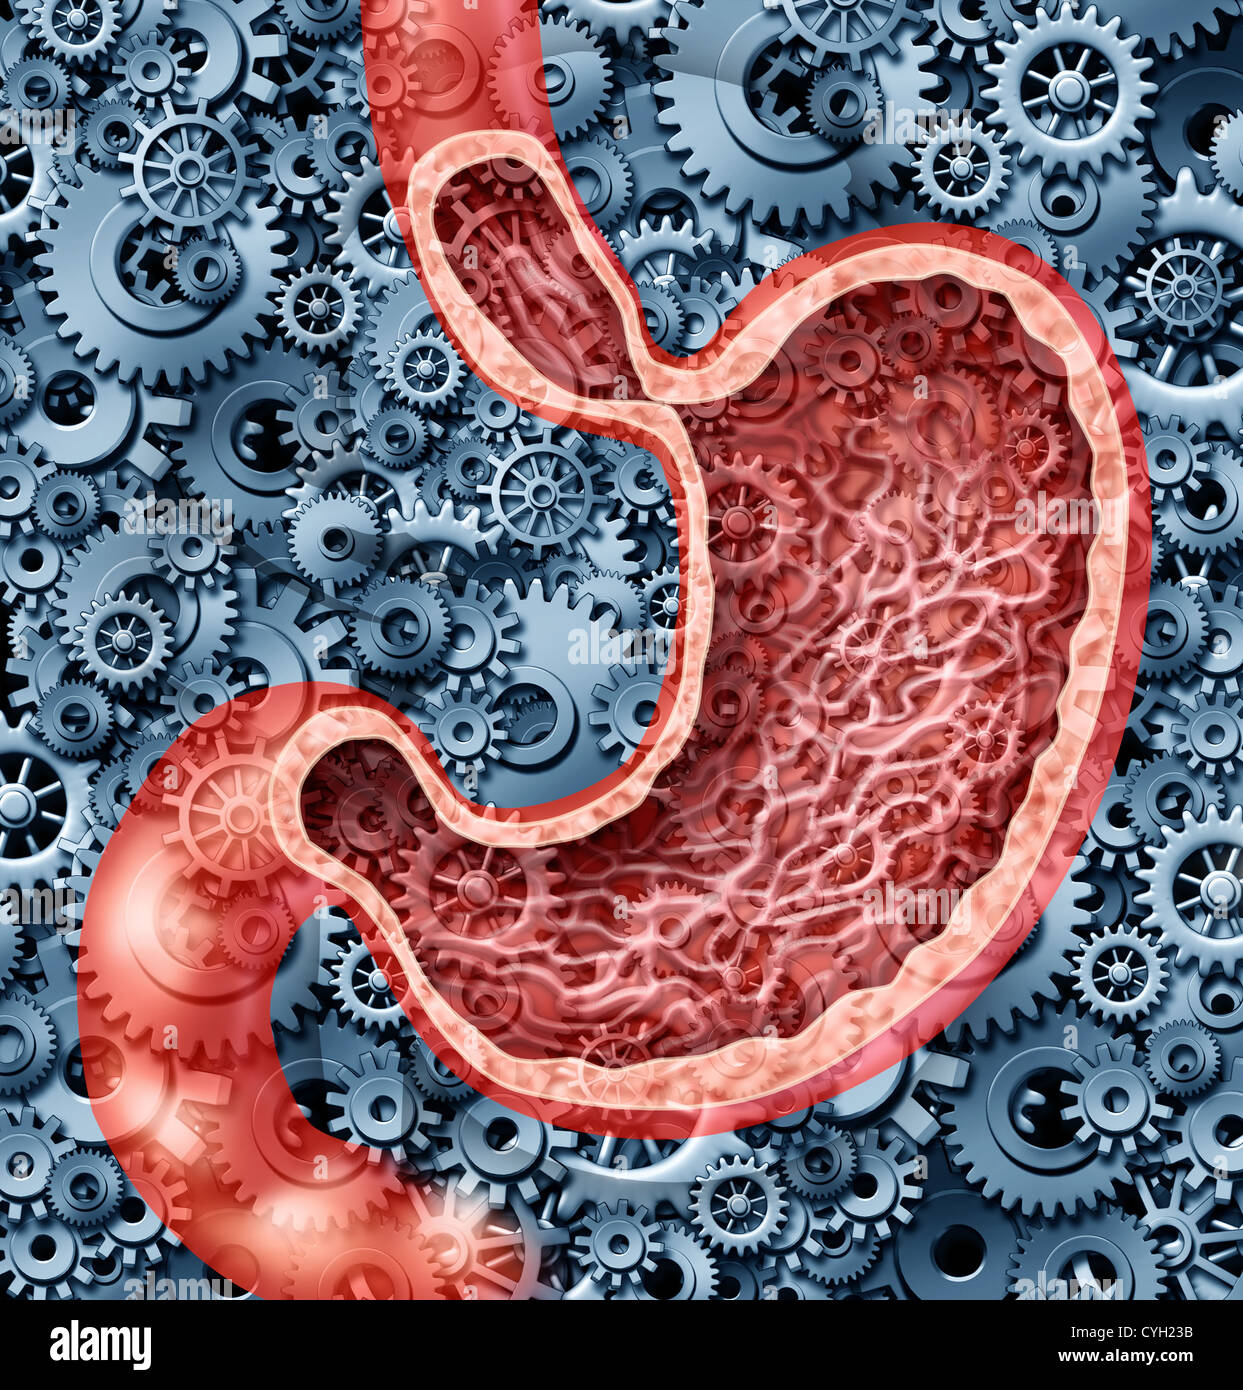 Digestione umana funzione come un stomaco anatomia dell'interno umano organo digerente rappresentata dagli ingranaggi e ruote dentate lavorando per digerire il cibo con succhi gastrici come una cura di salute diagramma illustrativo. Foto Stock